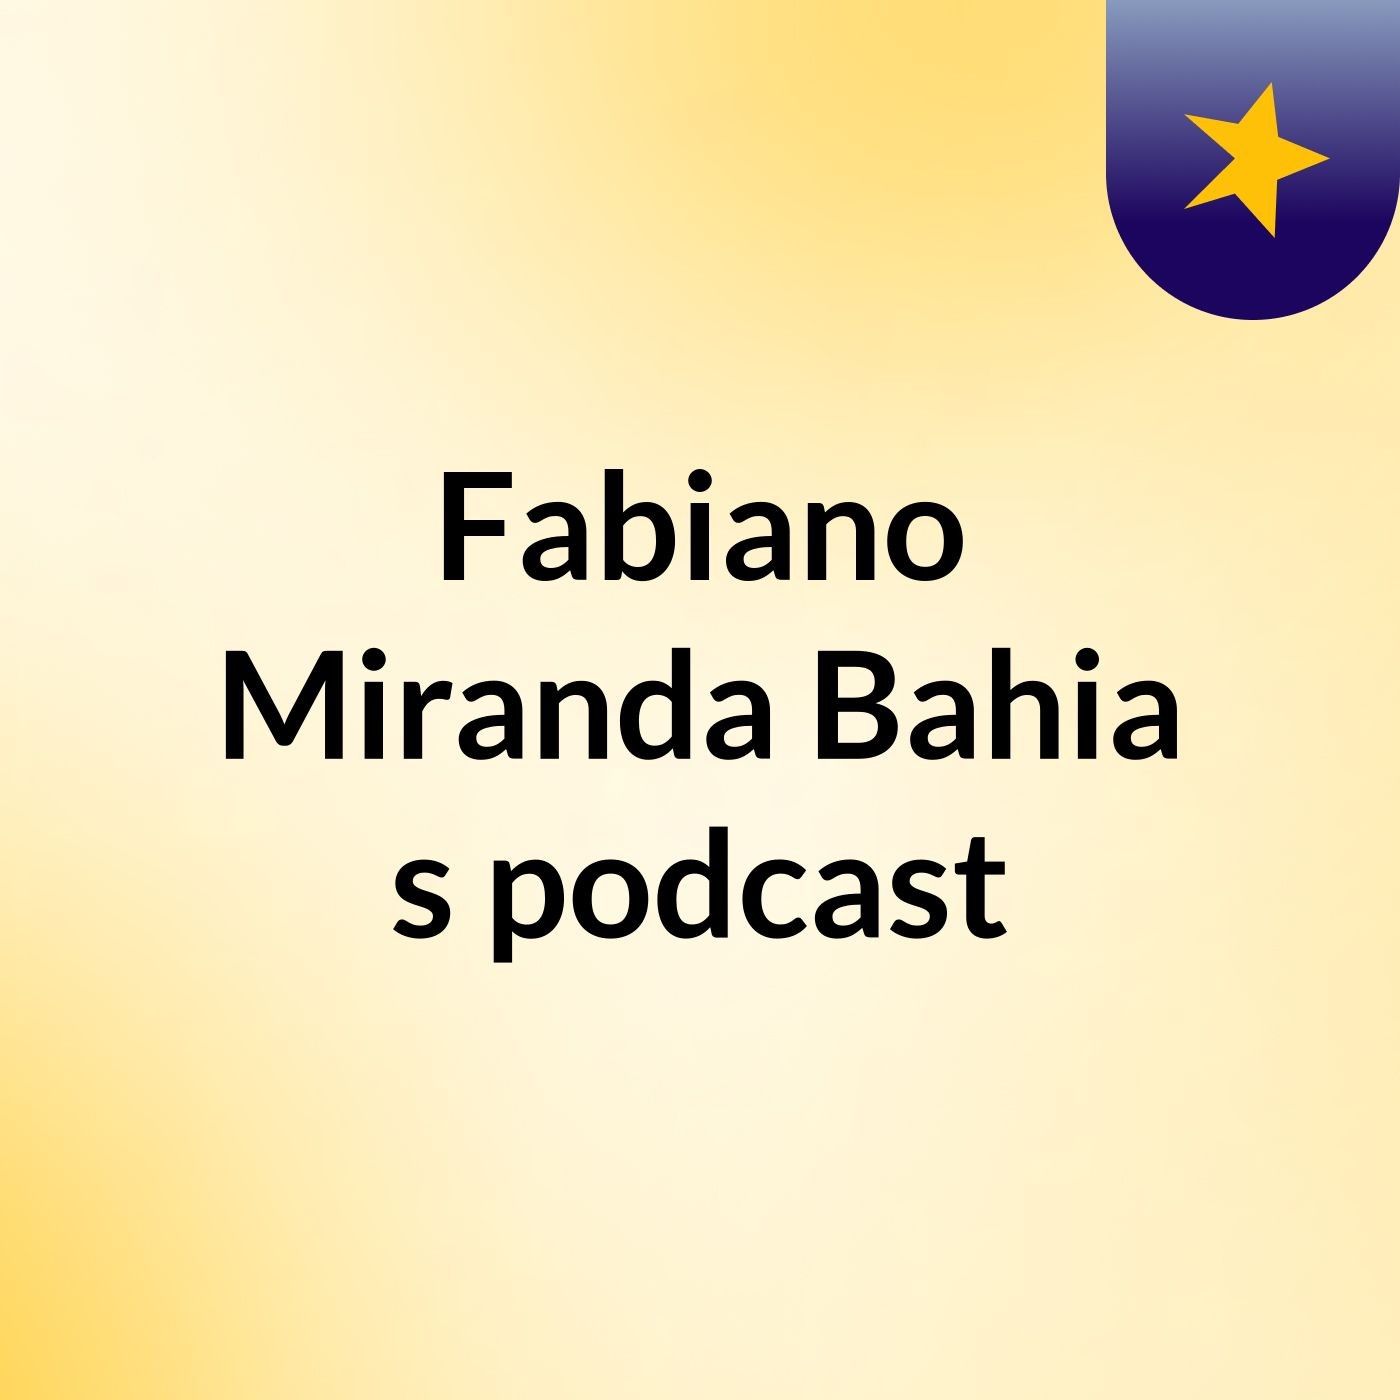 Fabiano Miranda Bahia's podcast